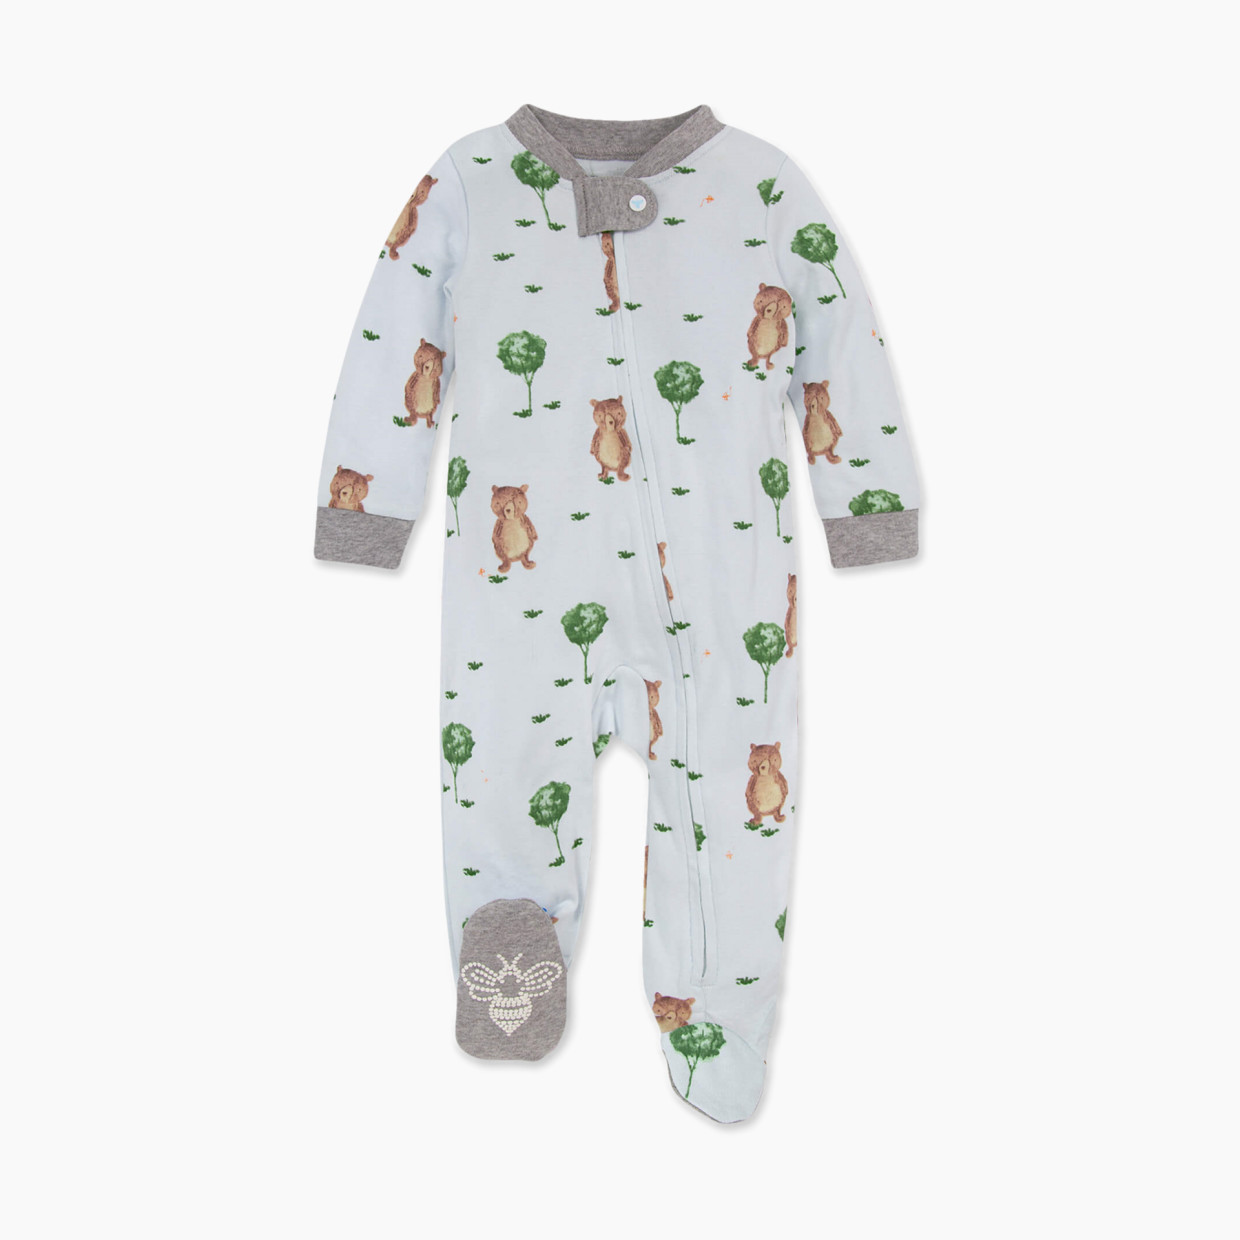 Burt's Bees Baby Organic Sleep & Play Footie Pajamas - Storybook Bears, Newborn.